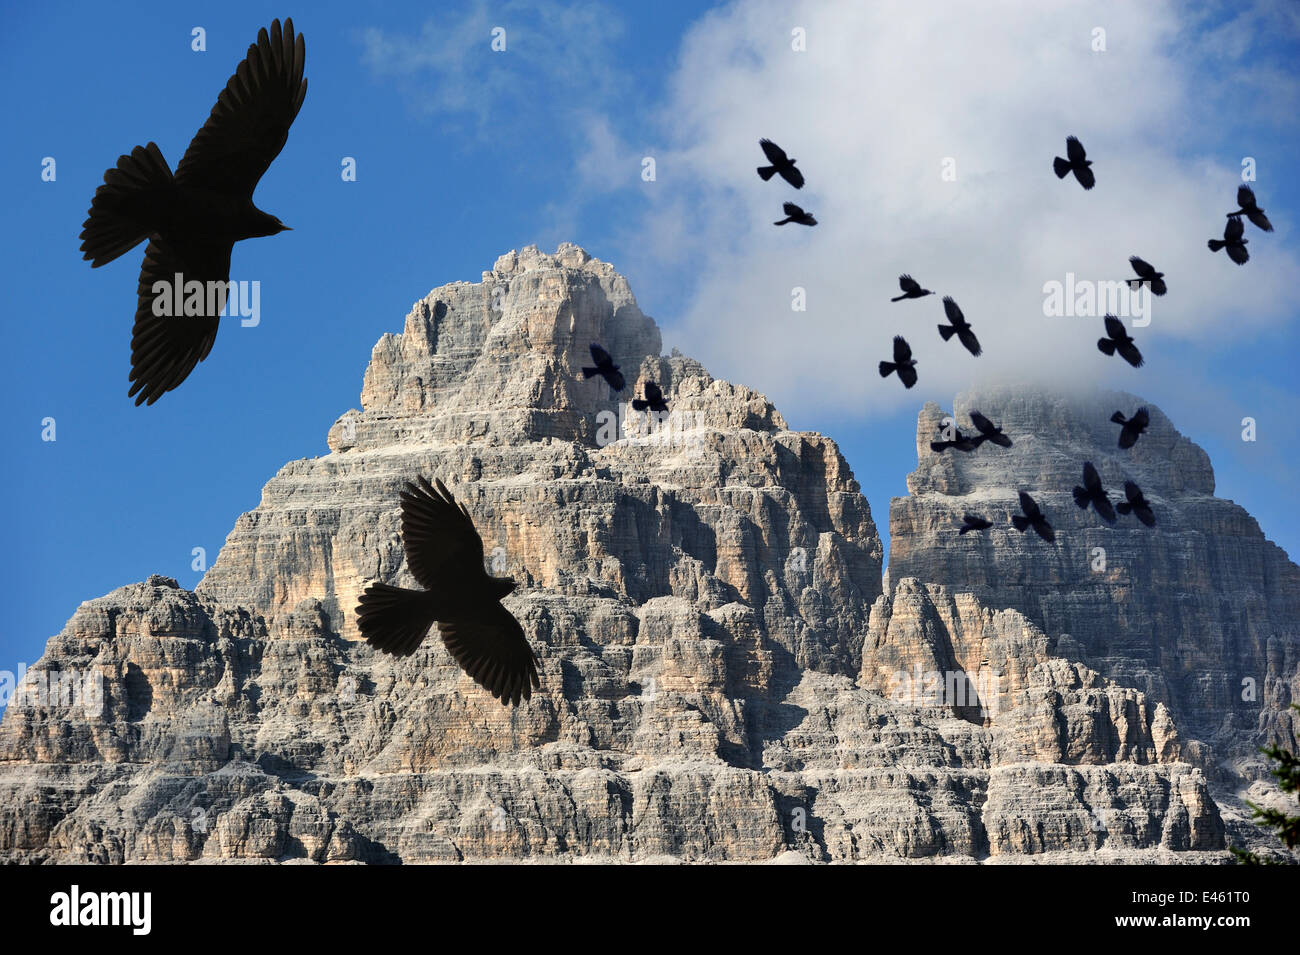 Gracchio alpino / giallo-fatturate (CHOUGH Pyrrhocorax graculus) gregge in volo contro la montagna, Dolomiti, Italia. Composito Digitale. Foto Stock